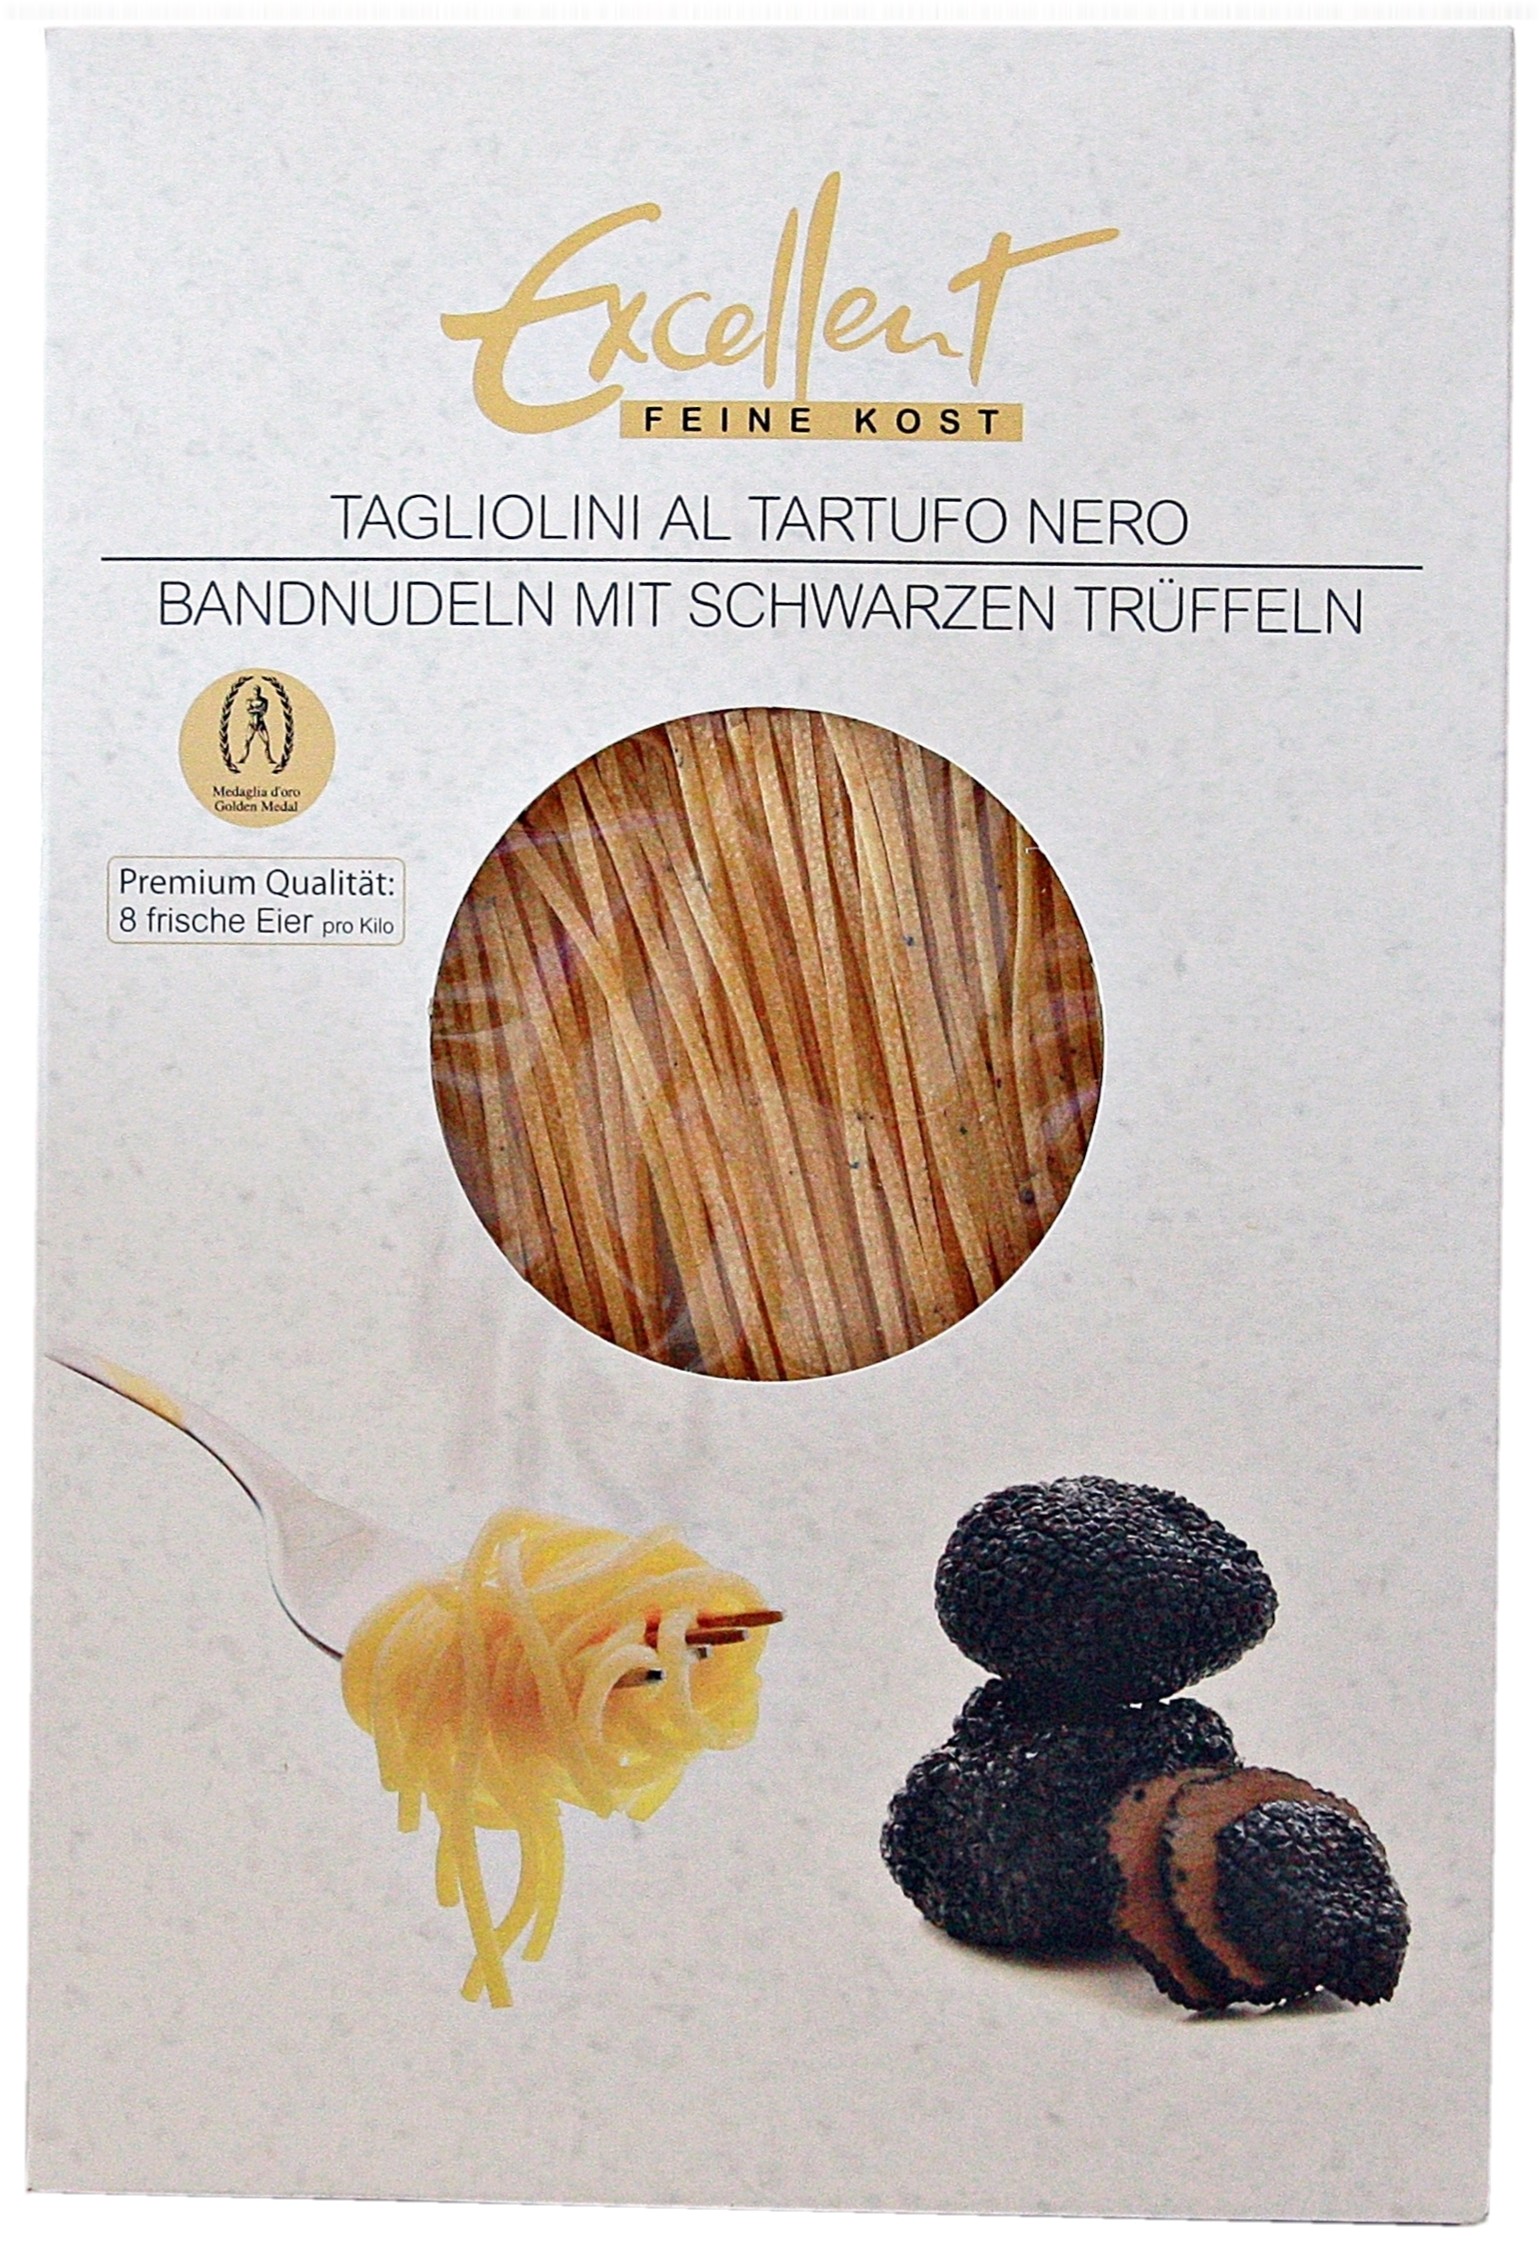 Tagliatelle Pasta with Black Truffle